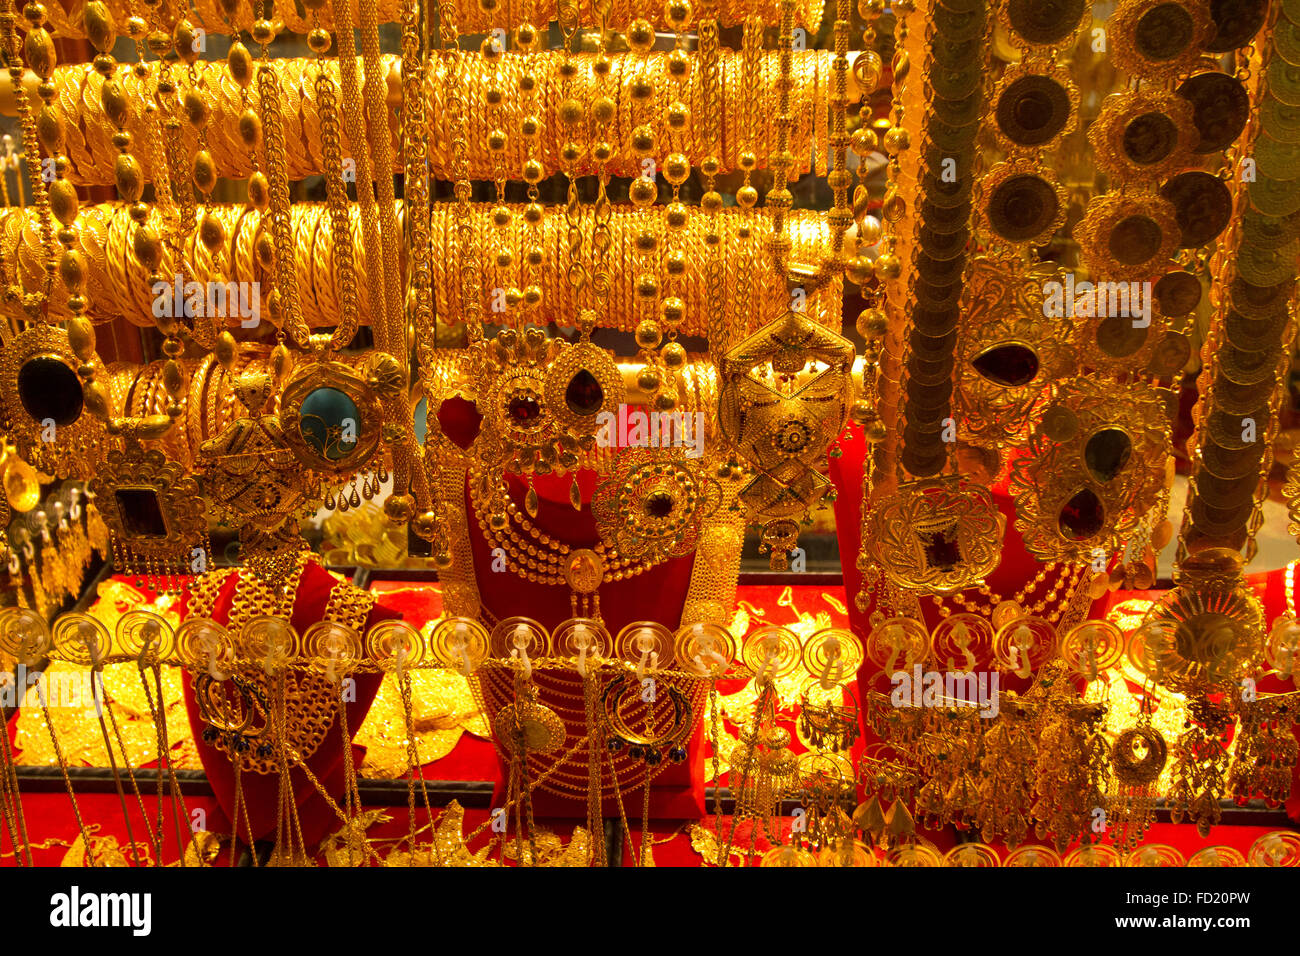 Arap gold - pantallas idénticas pueden ser vistos en los zocos de oro en todos los Estados Árabes del Golfo Foto de stock